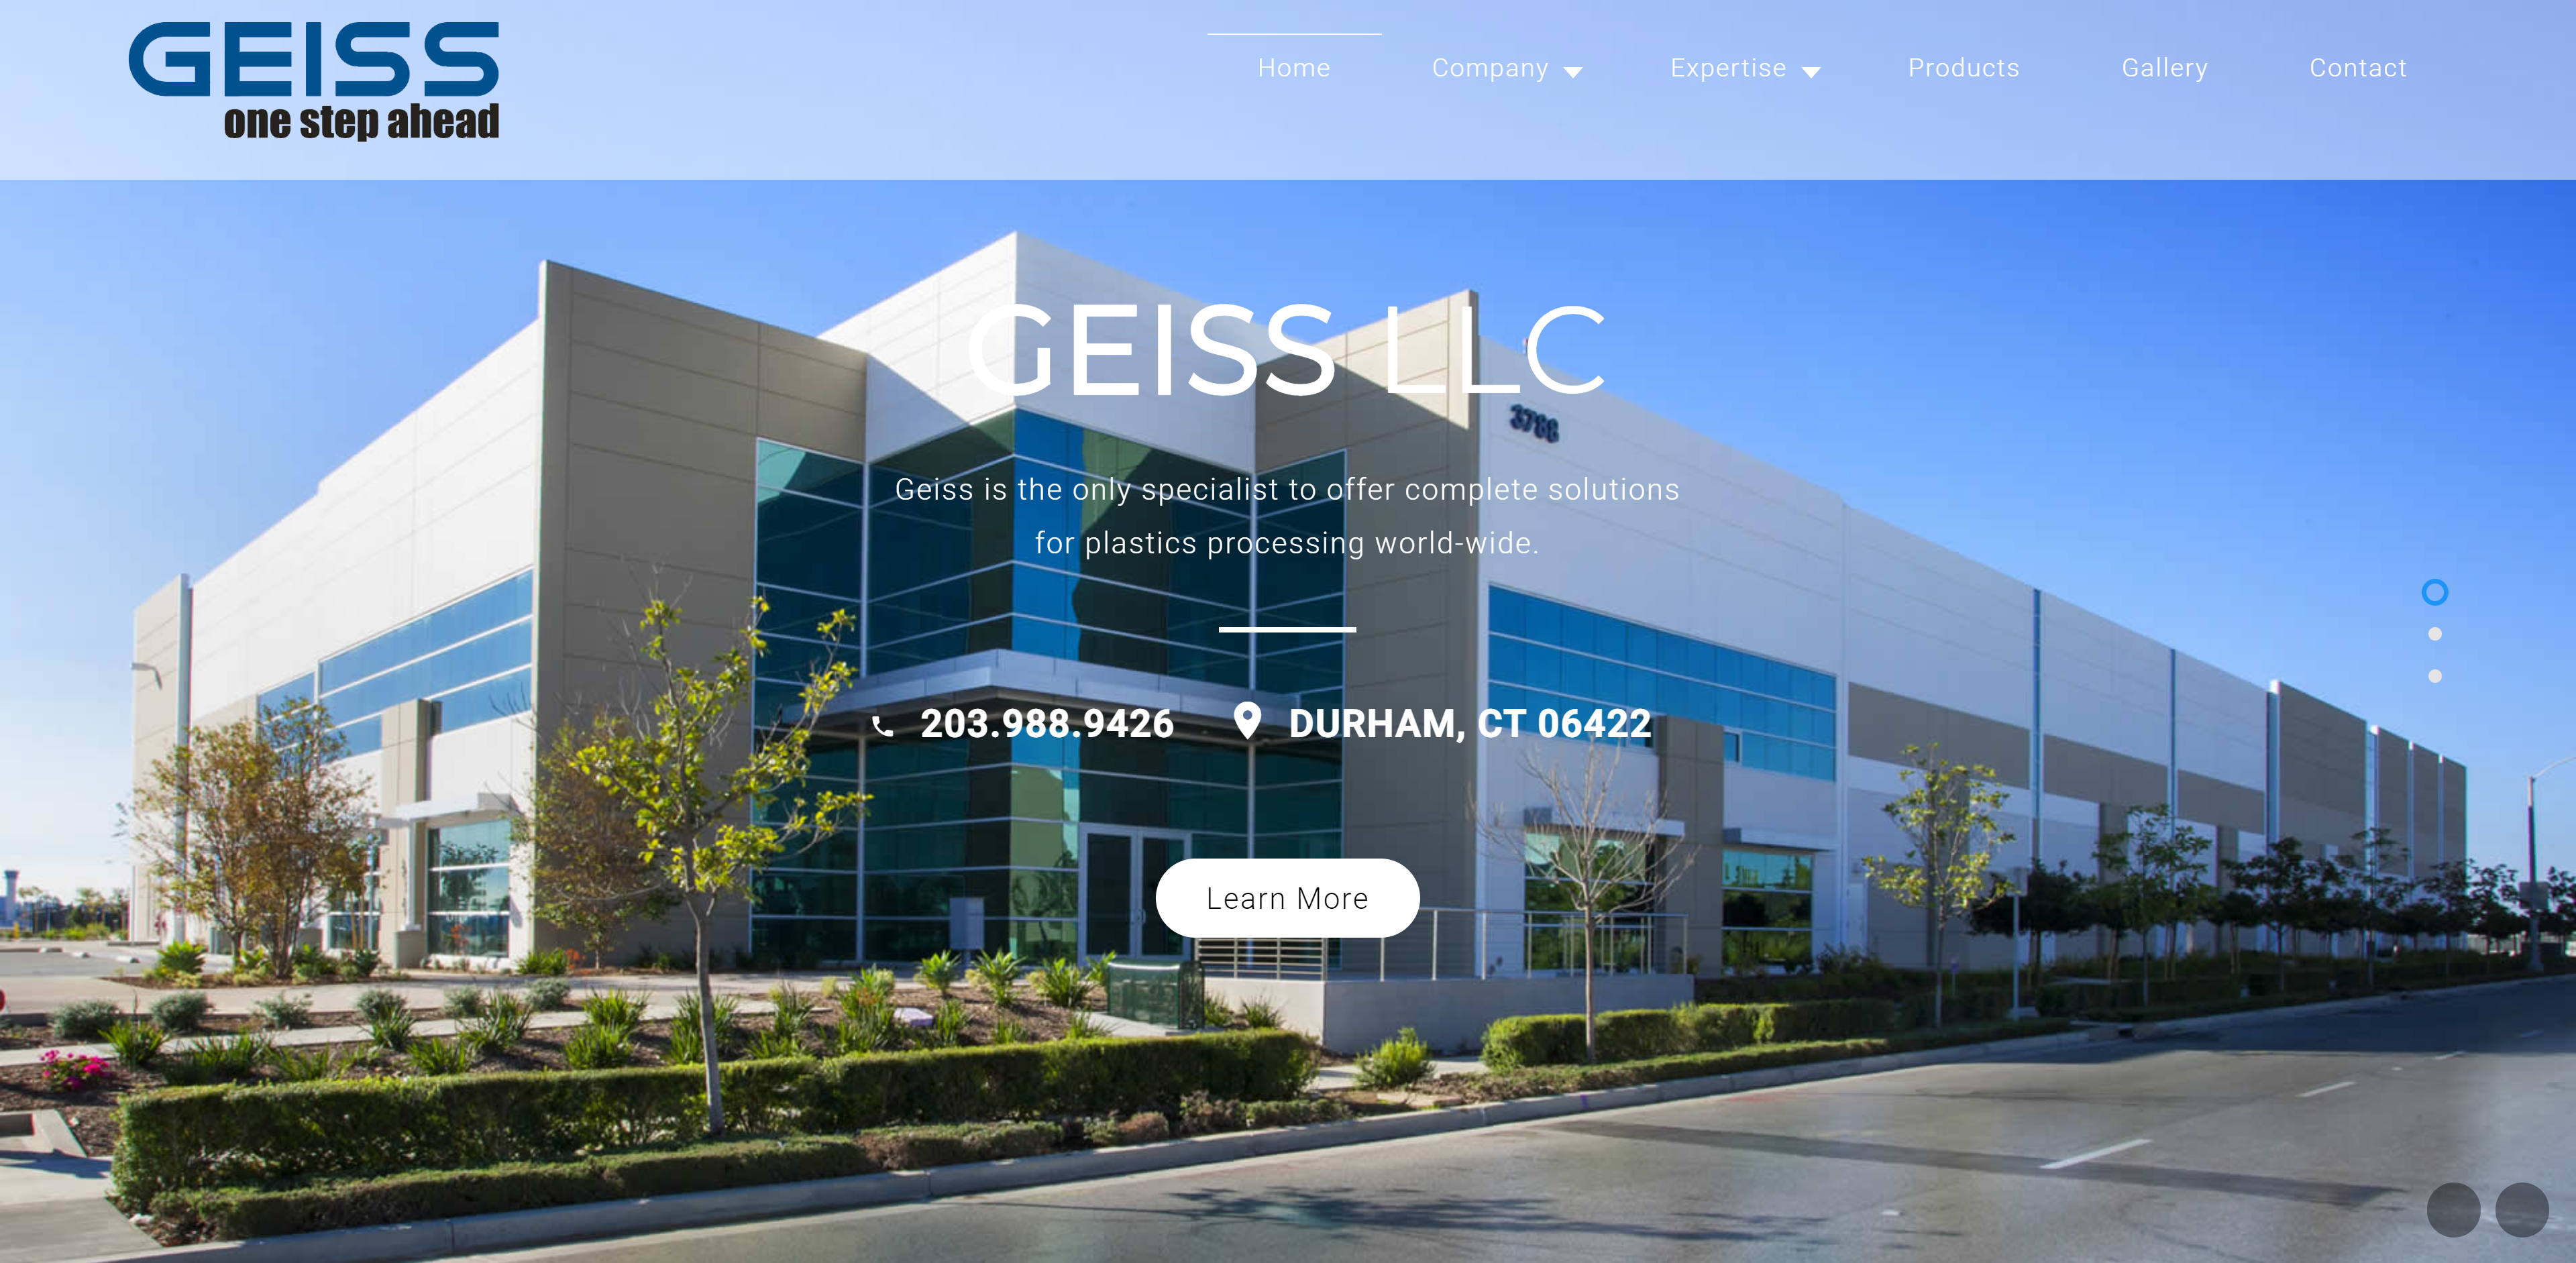 GEISS LLC